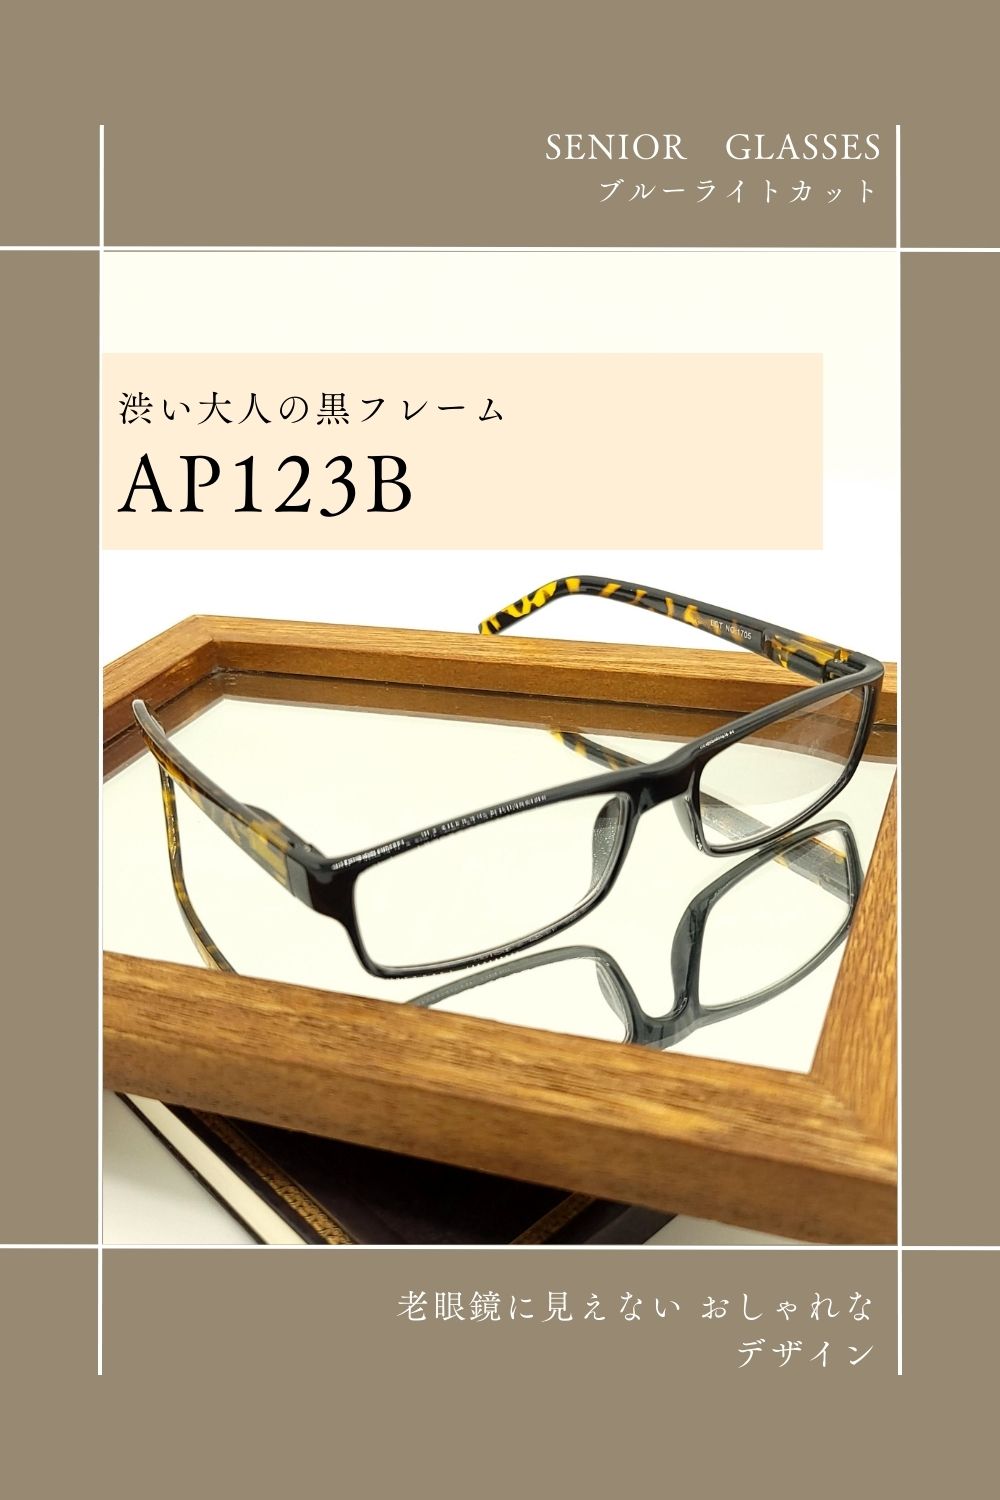 渋い大人の黒フレーム 老眼鏡に見えないおしゃれなデザイン ブルーライトカットレンズ採用シニアグラス AP123B | 有限会社エール